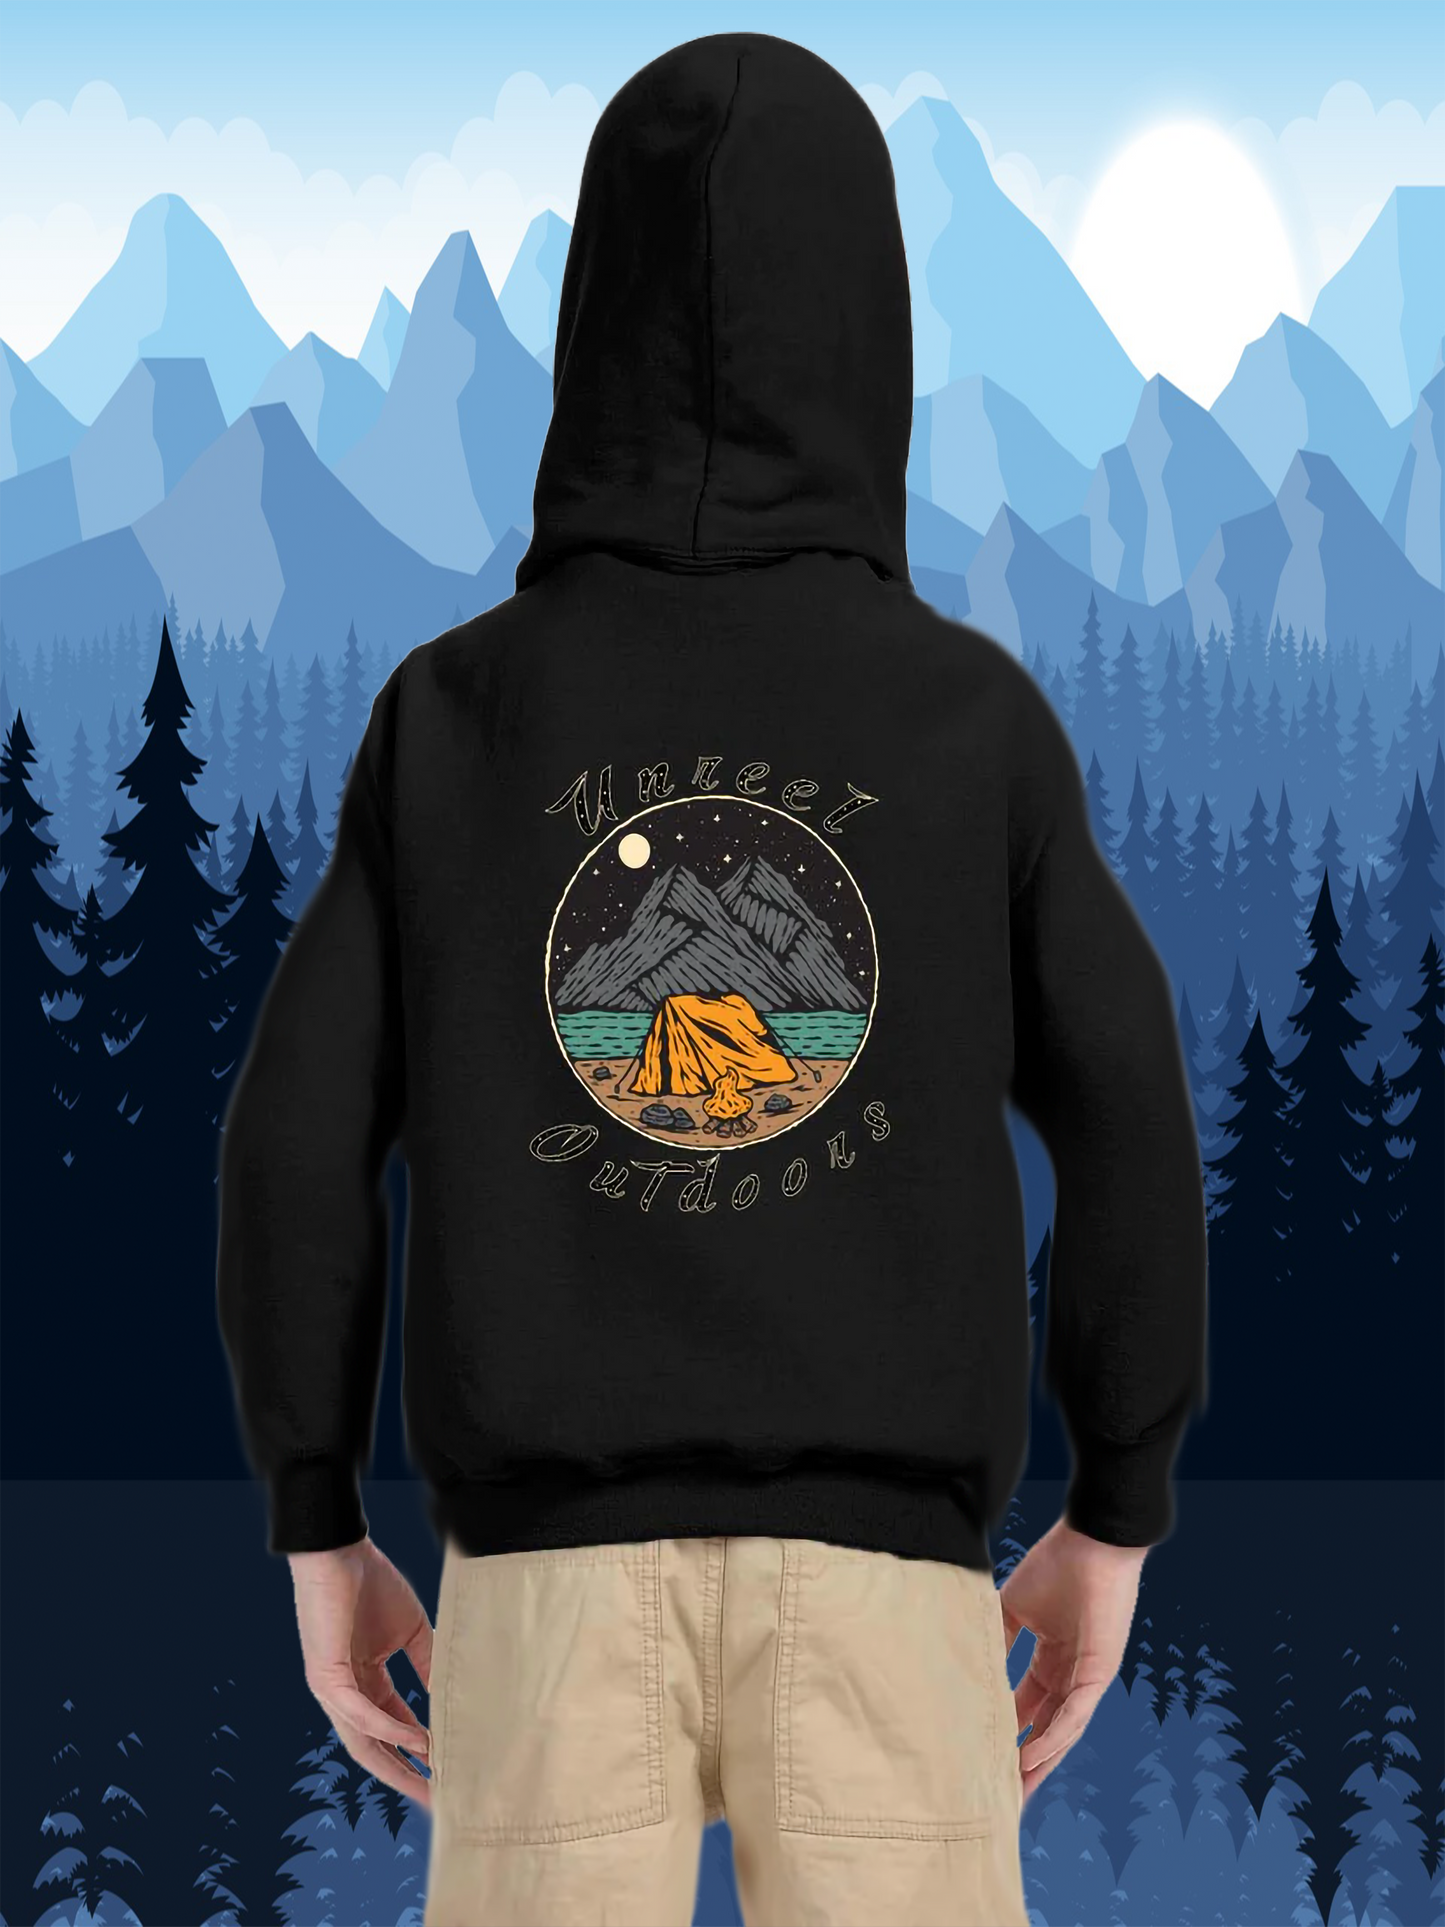 Unreel outdoors adventure awaits hoodie